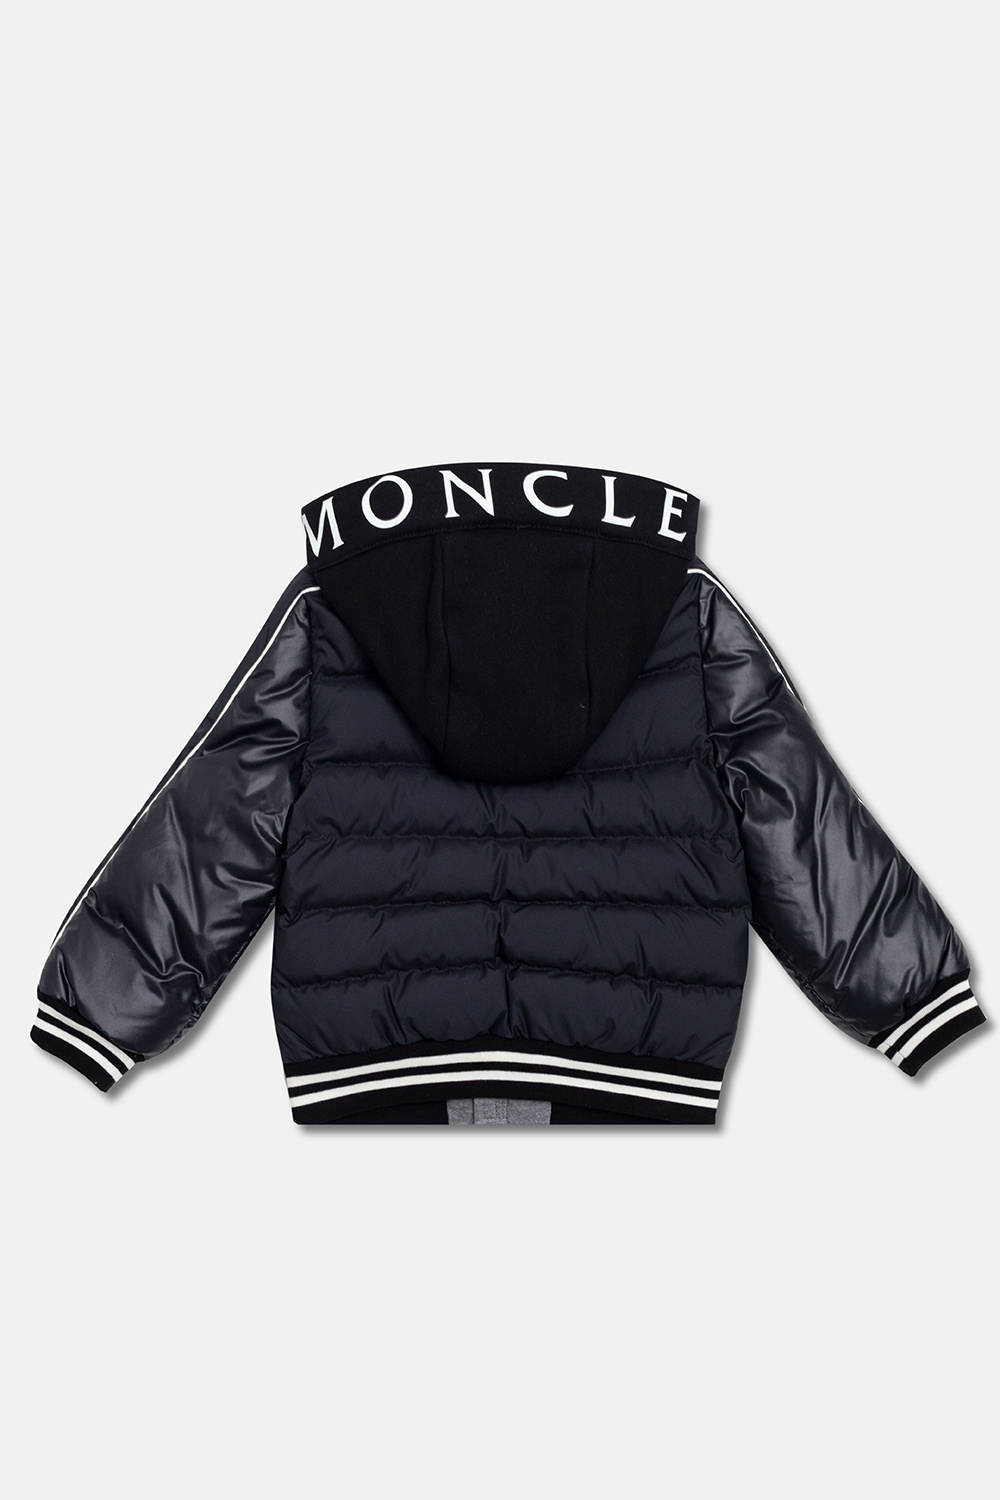 Moncler Enfant ‘Merih’ down jacket